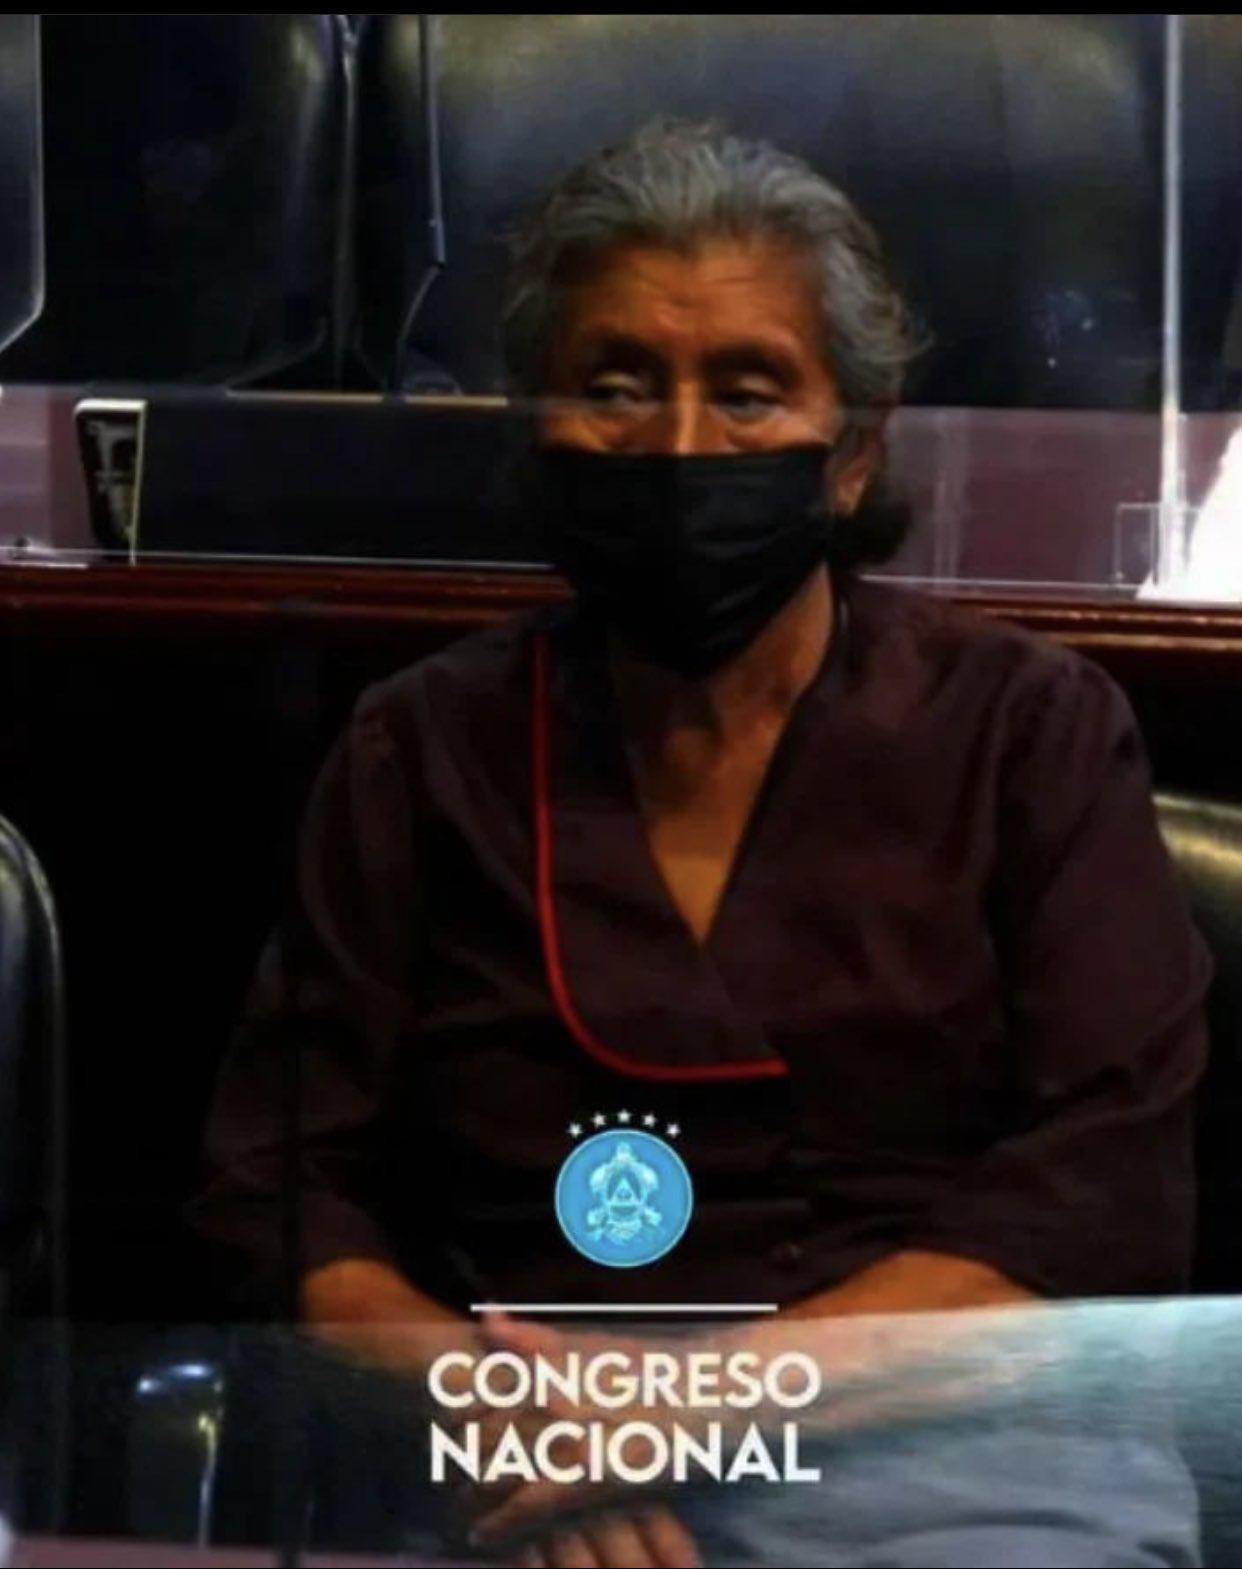 El pueblo en el Congreso Nacional: Las insólitas imágenes en el hemiciclo con ‘Deadpool’ y la ternura e inocencia de unas niñas